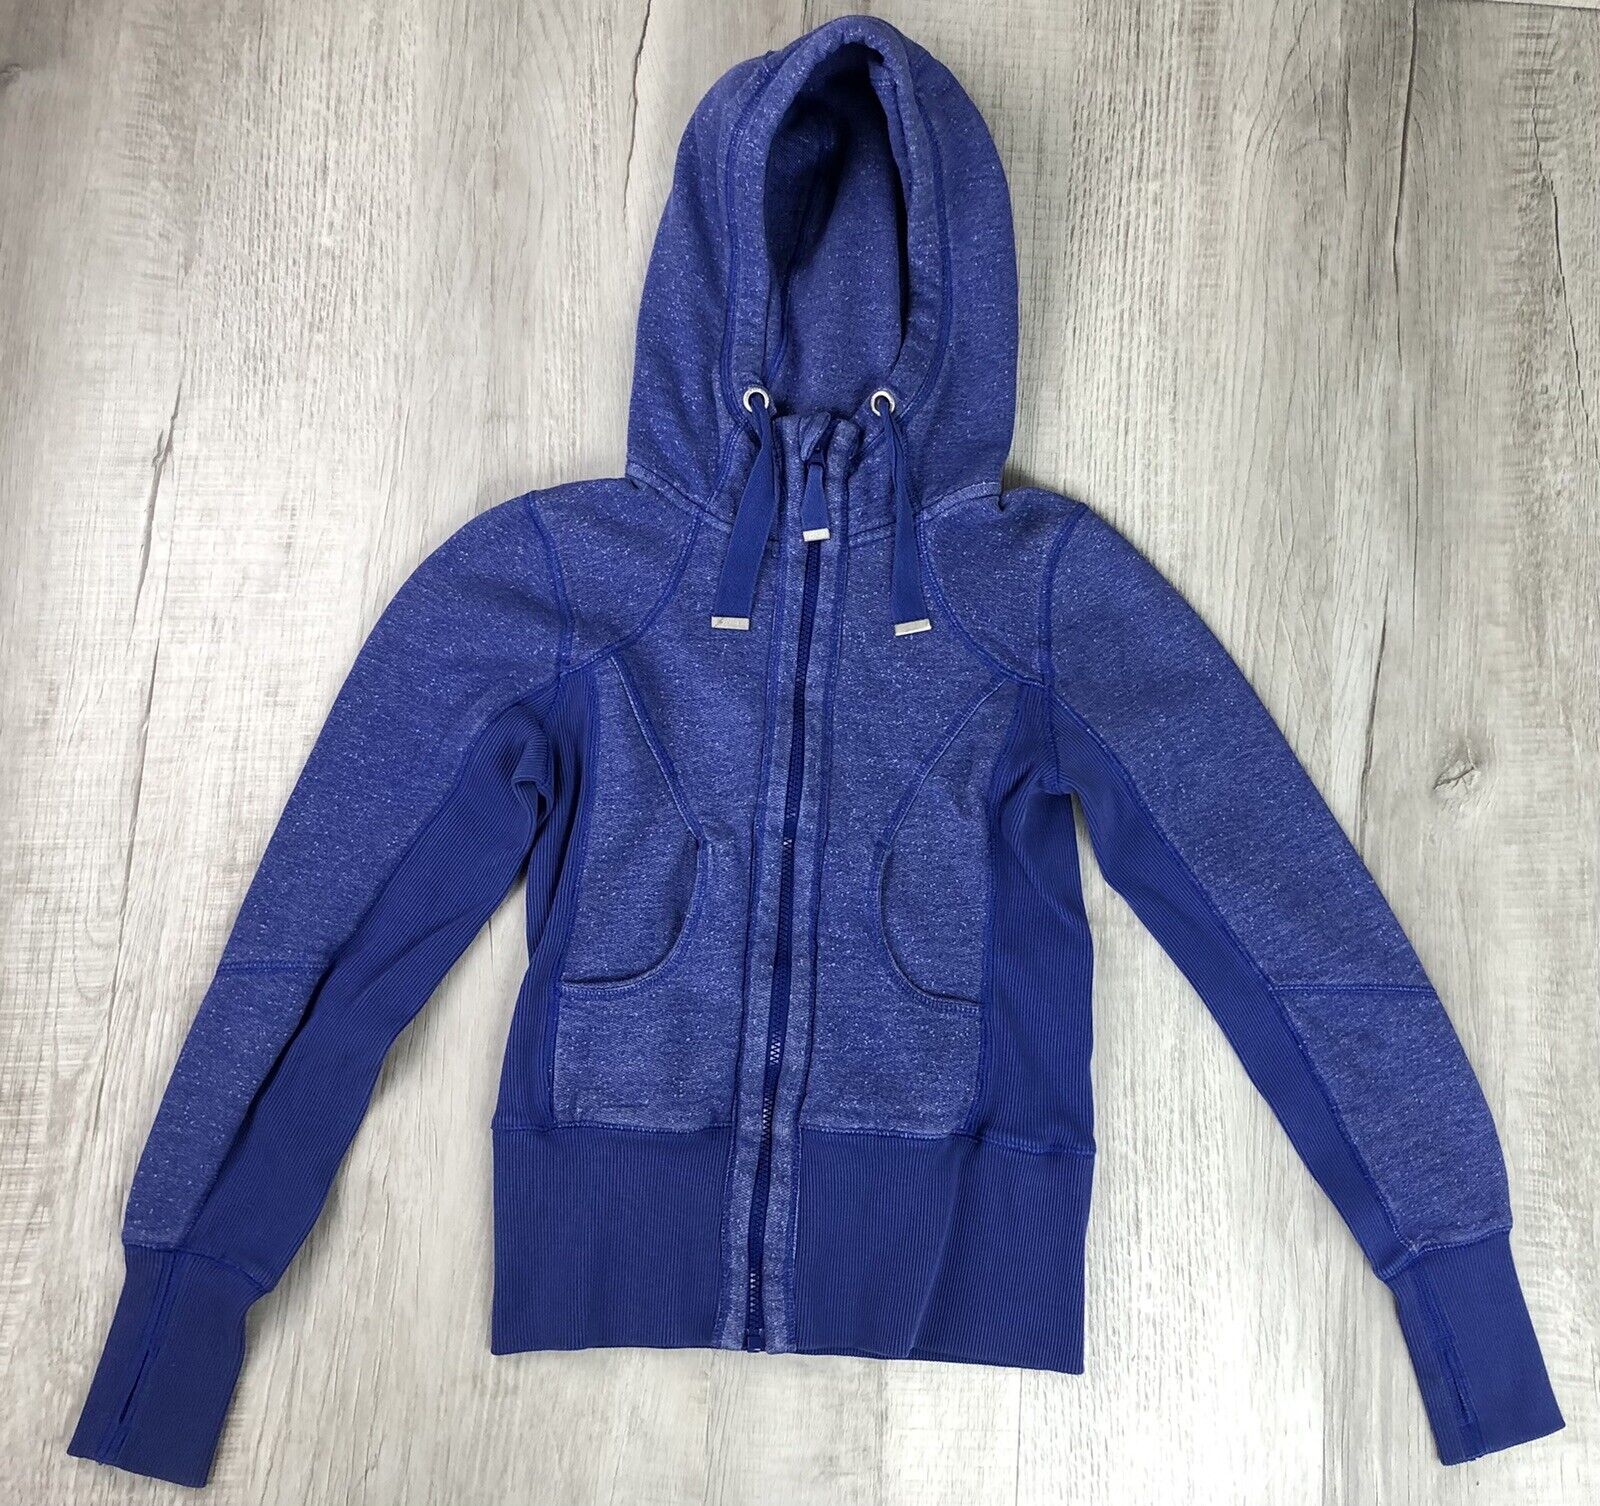 Zella Hoodie Finally resale start Sweatshirt Blue Purple Size Outlet ☆ Free Shipping Women’s XS